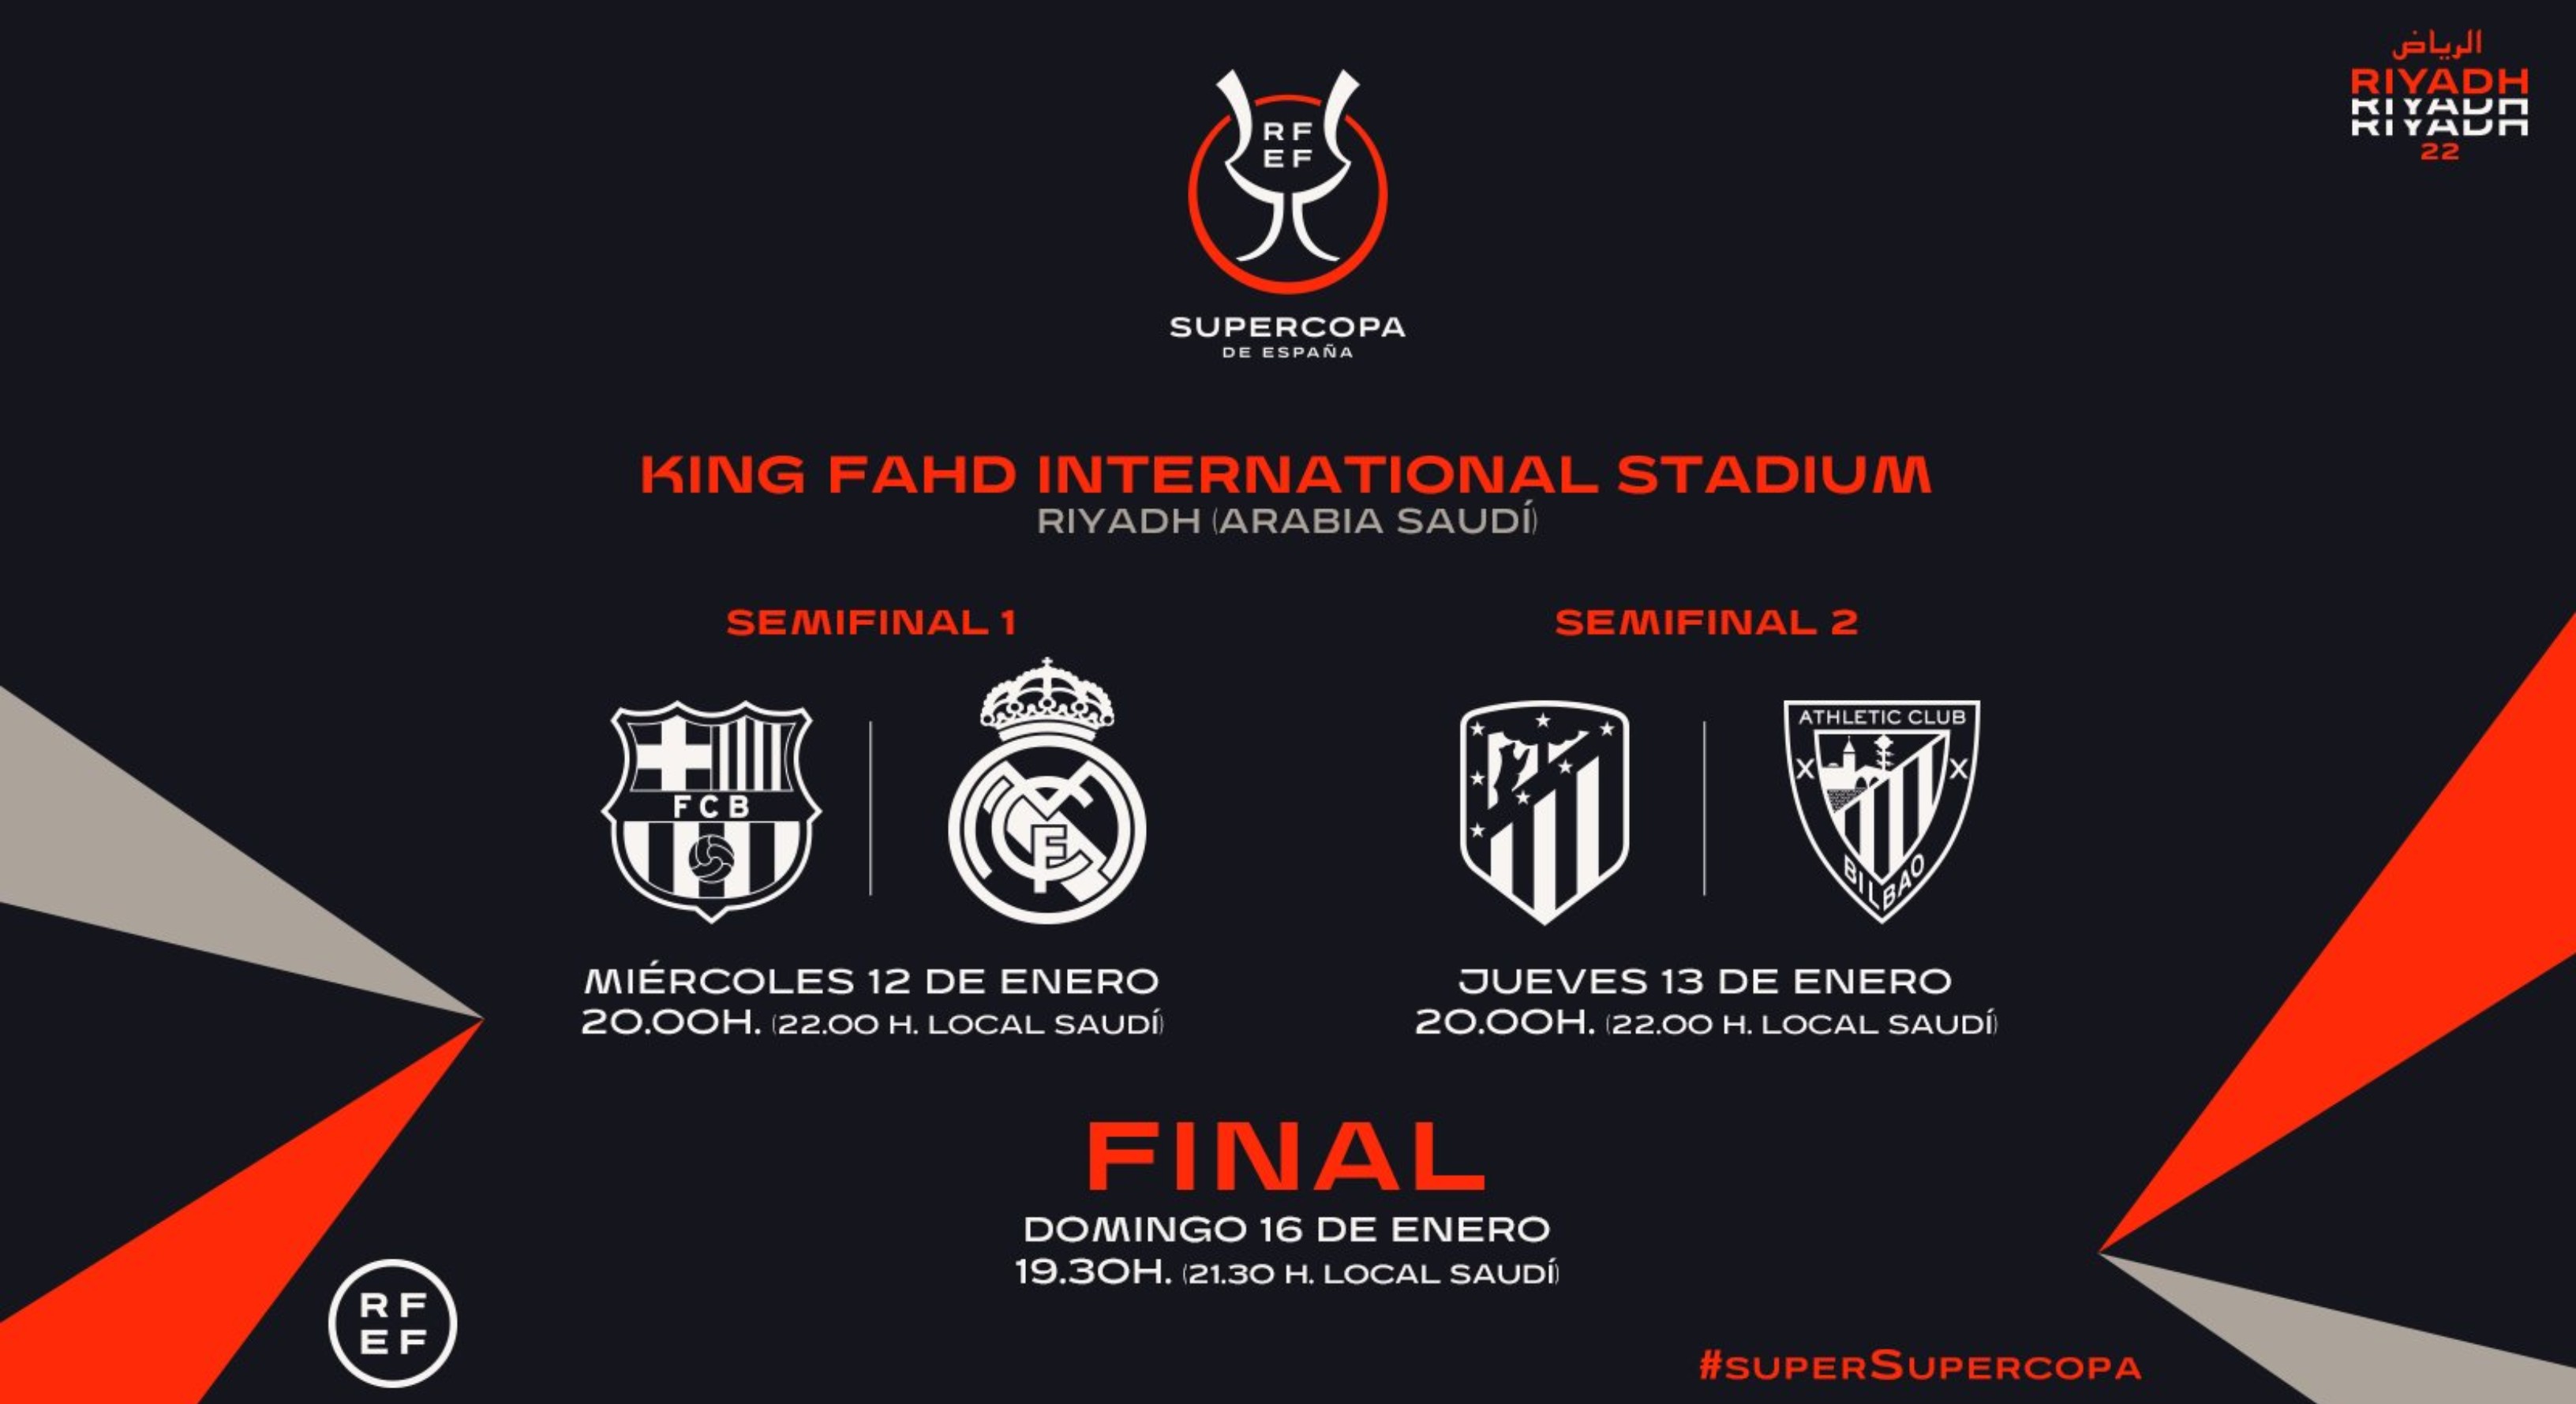 La Supercopa de España la disputarán el miércoles 12 y jueves 13 de enero en Arabia Saudita. Foto Twitter.